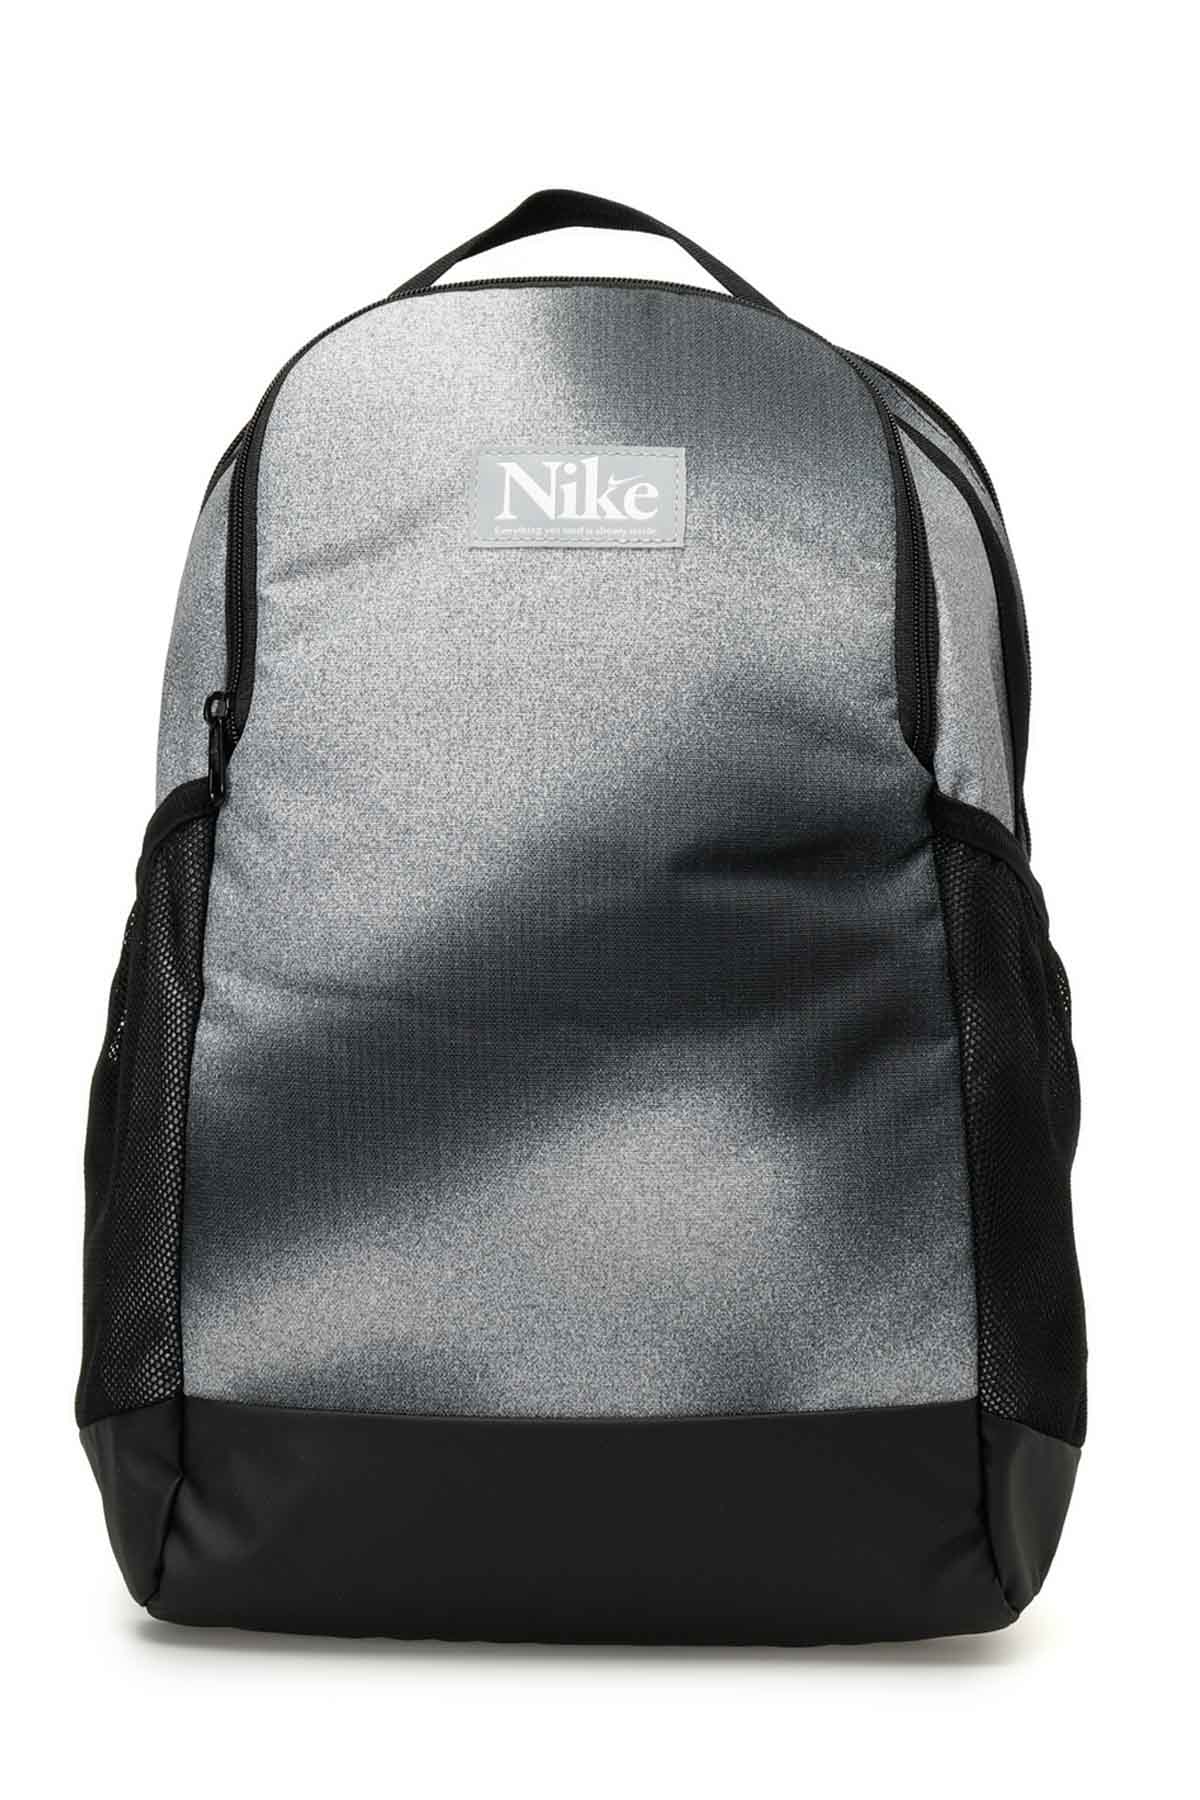 Nike Brasilia Siyah Unisex Sırt Çantası 101919617